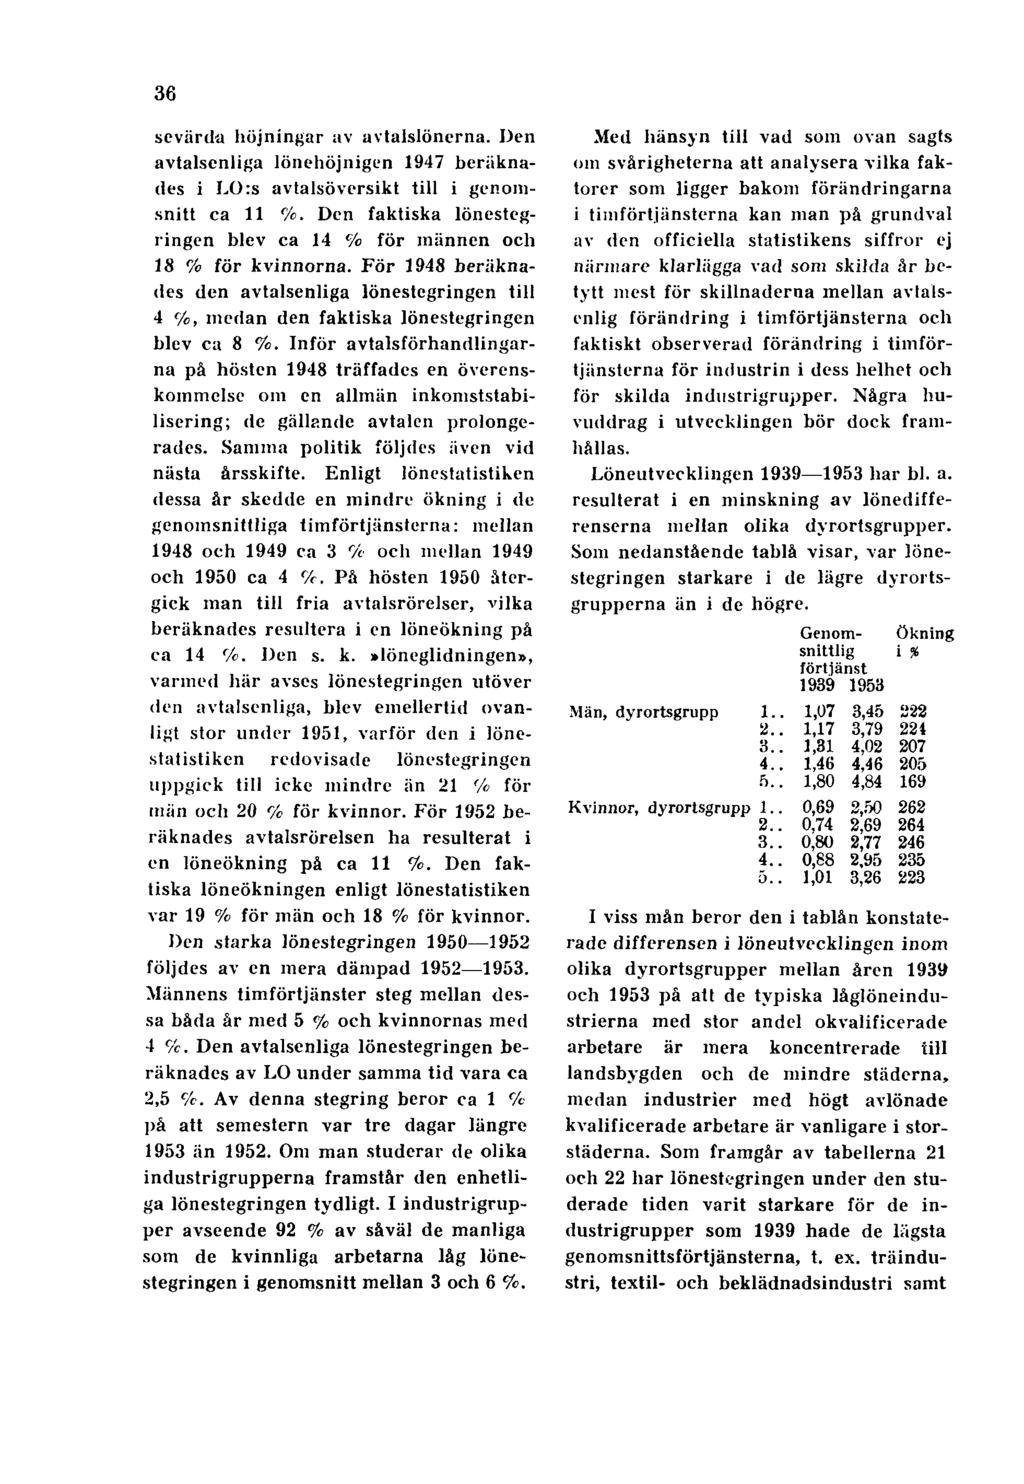 36 sevärda höjningar av avtalslönerna. Den avtalsenliga lönehöjnigen 1947 beräknades i LO:s avtalsöversikt till i genomsnitt ca 11 %.